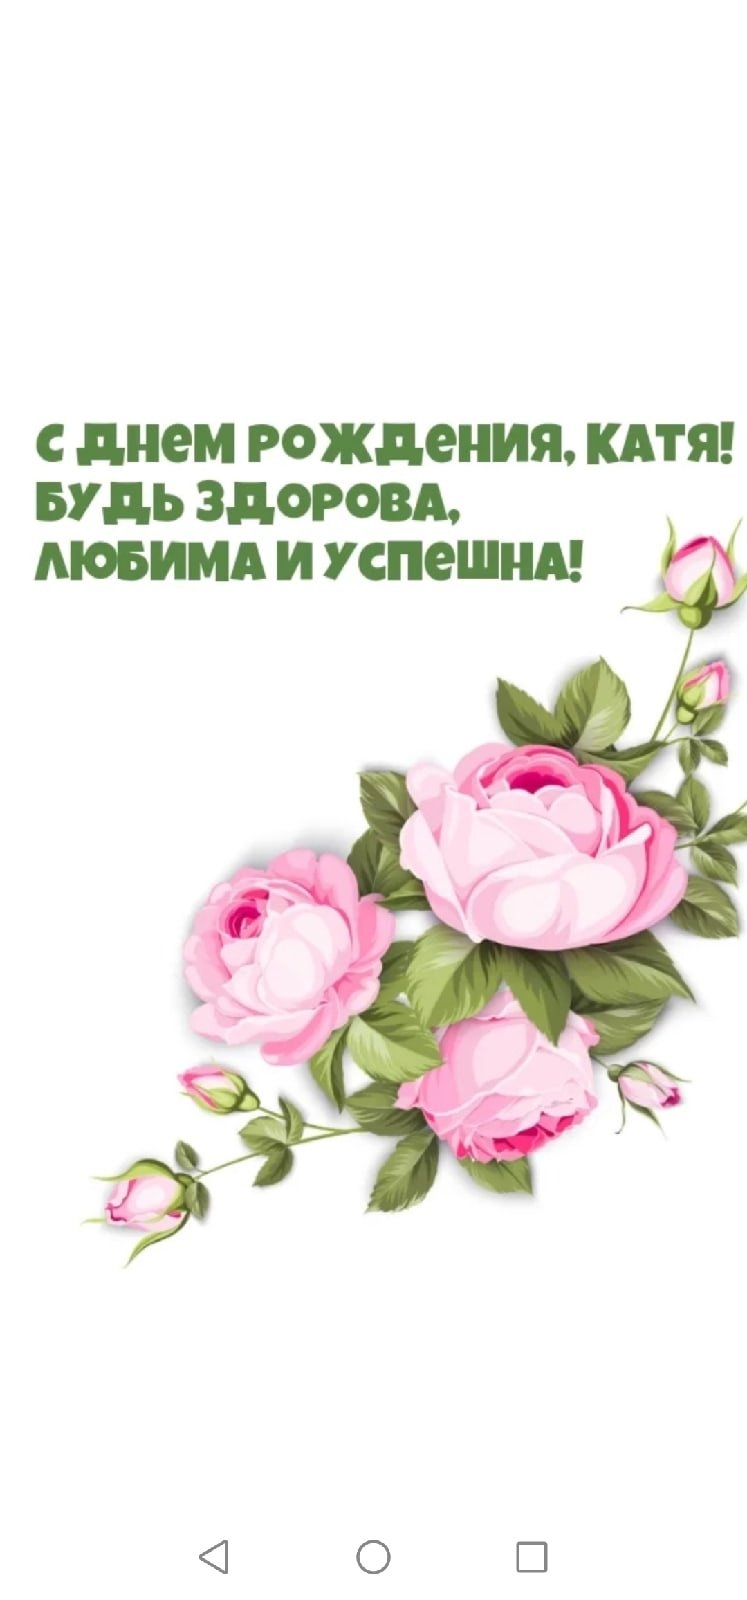 Екатерина вячеславовна с днем рождения картинки